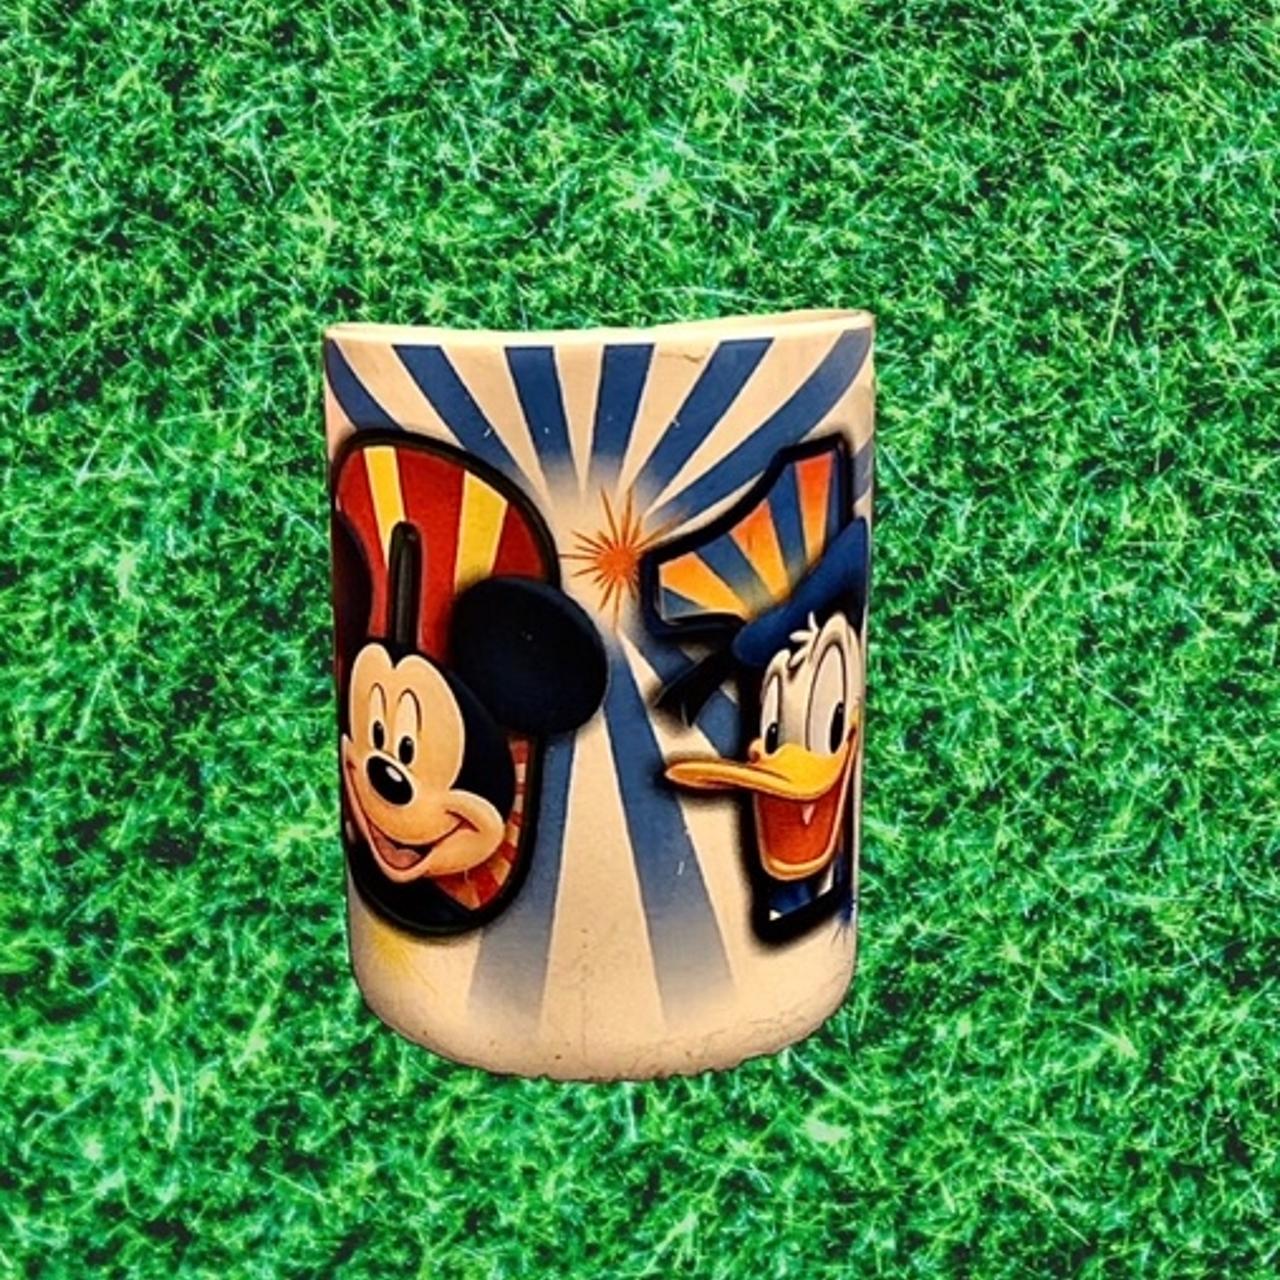 Disney Donald Duck Mug Condition: pre owned - Depop